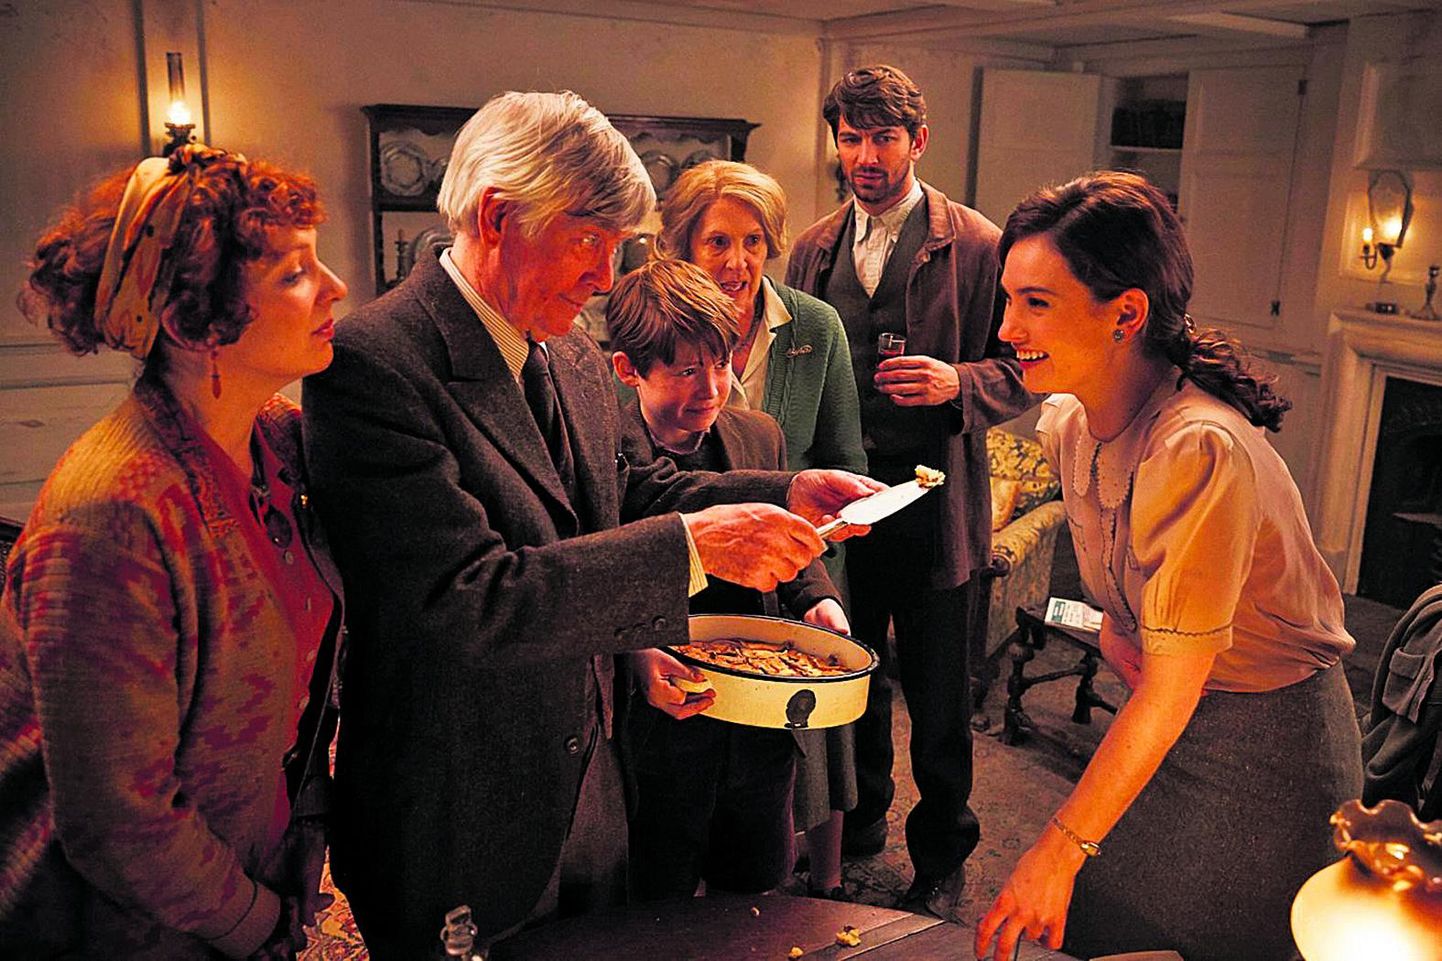 Kaader filmist «Guernsey kirjandus- ja kartulikoorepiruka selts” - paremal peategelane Juliet Ashton (Lily James), kes proovib kartulikoorepirukat.